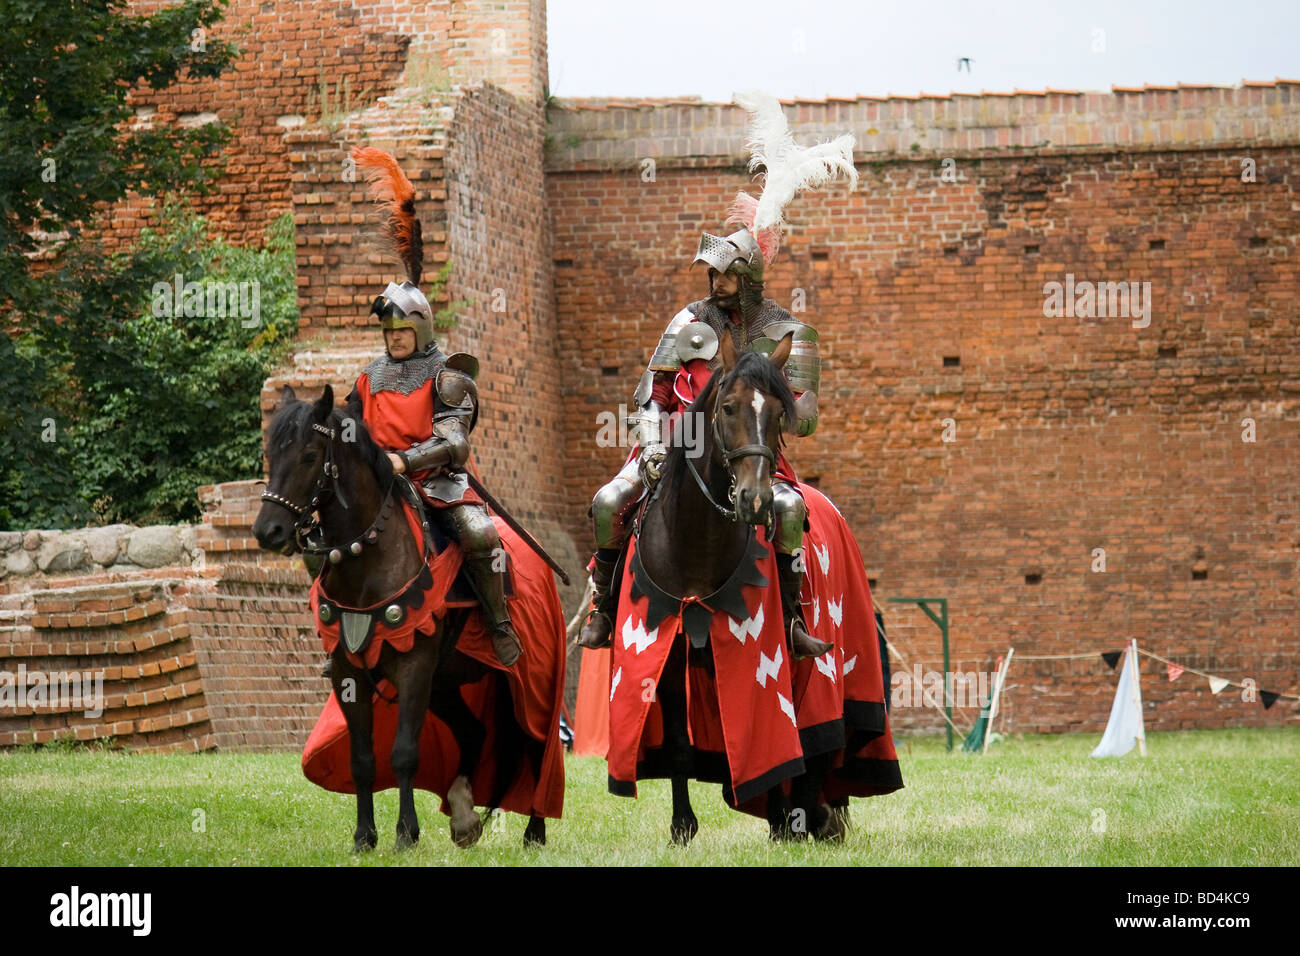 Medievale di cavalleria pesante di cavalieri su cavalli militari che si presentano al pubblico. Preso in Malbork, Polonia, 2009. Foto Stock